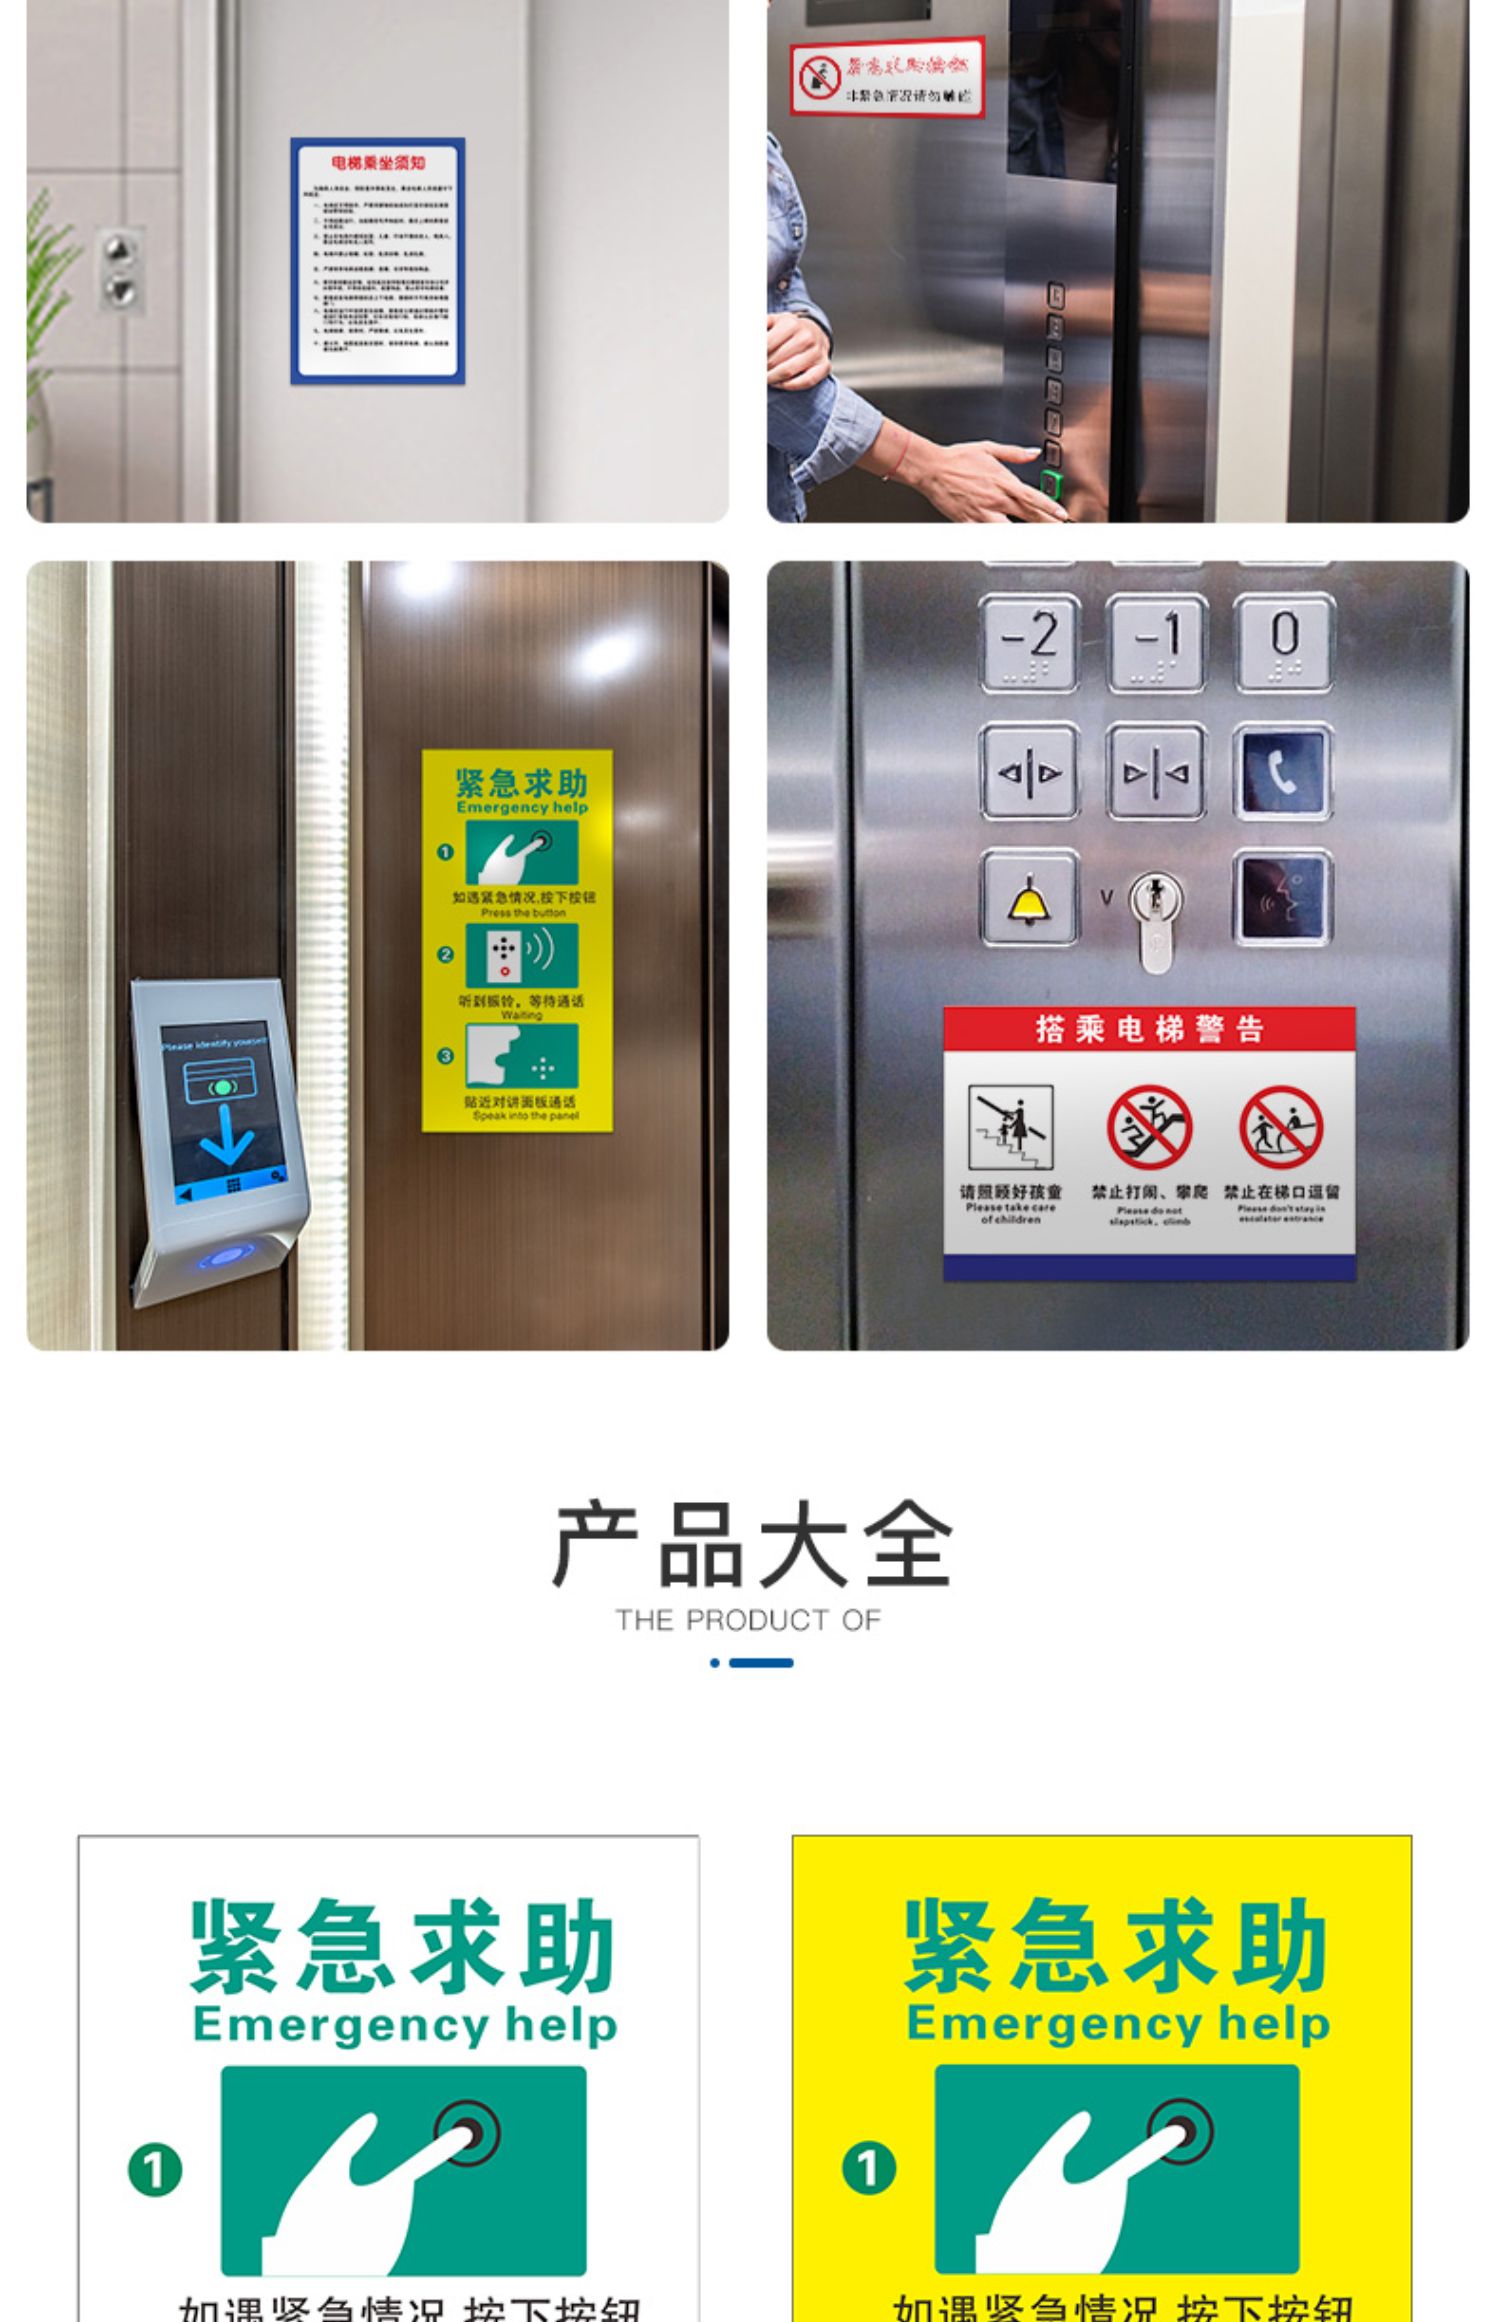 电梯紧急报警按钮标识安全标志电梯标识求助电话指示贴纸温馨提示标识